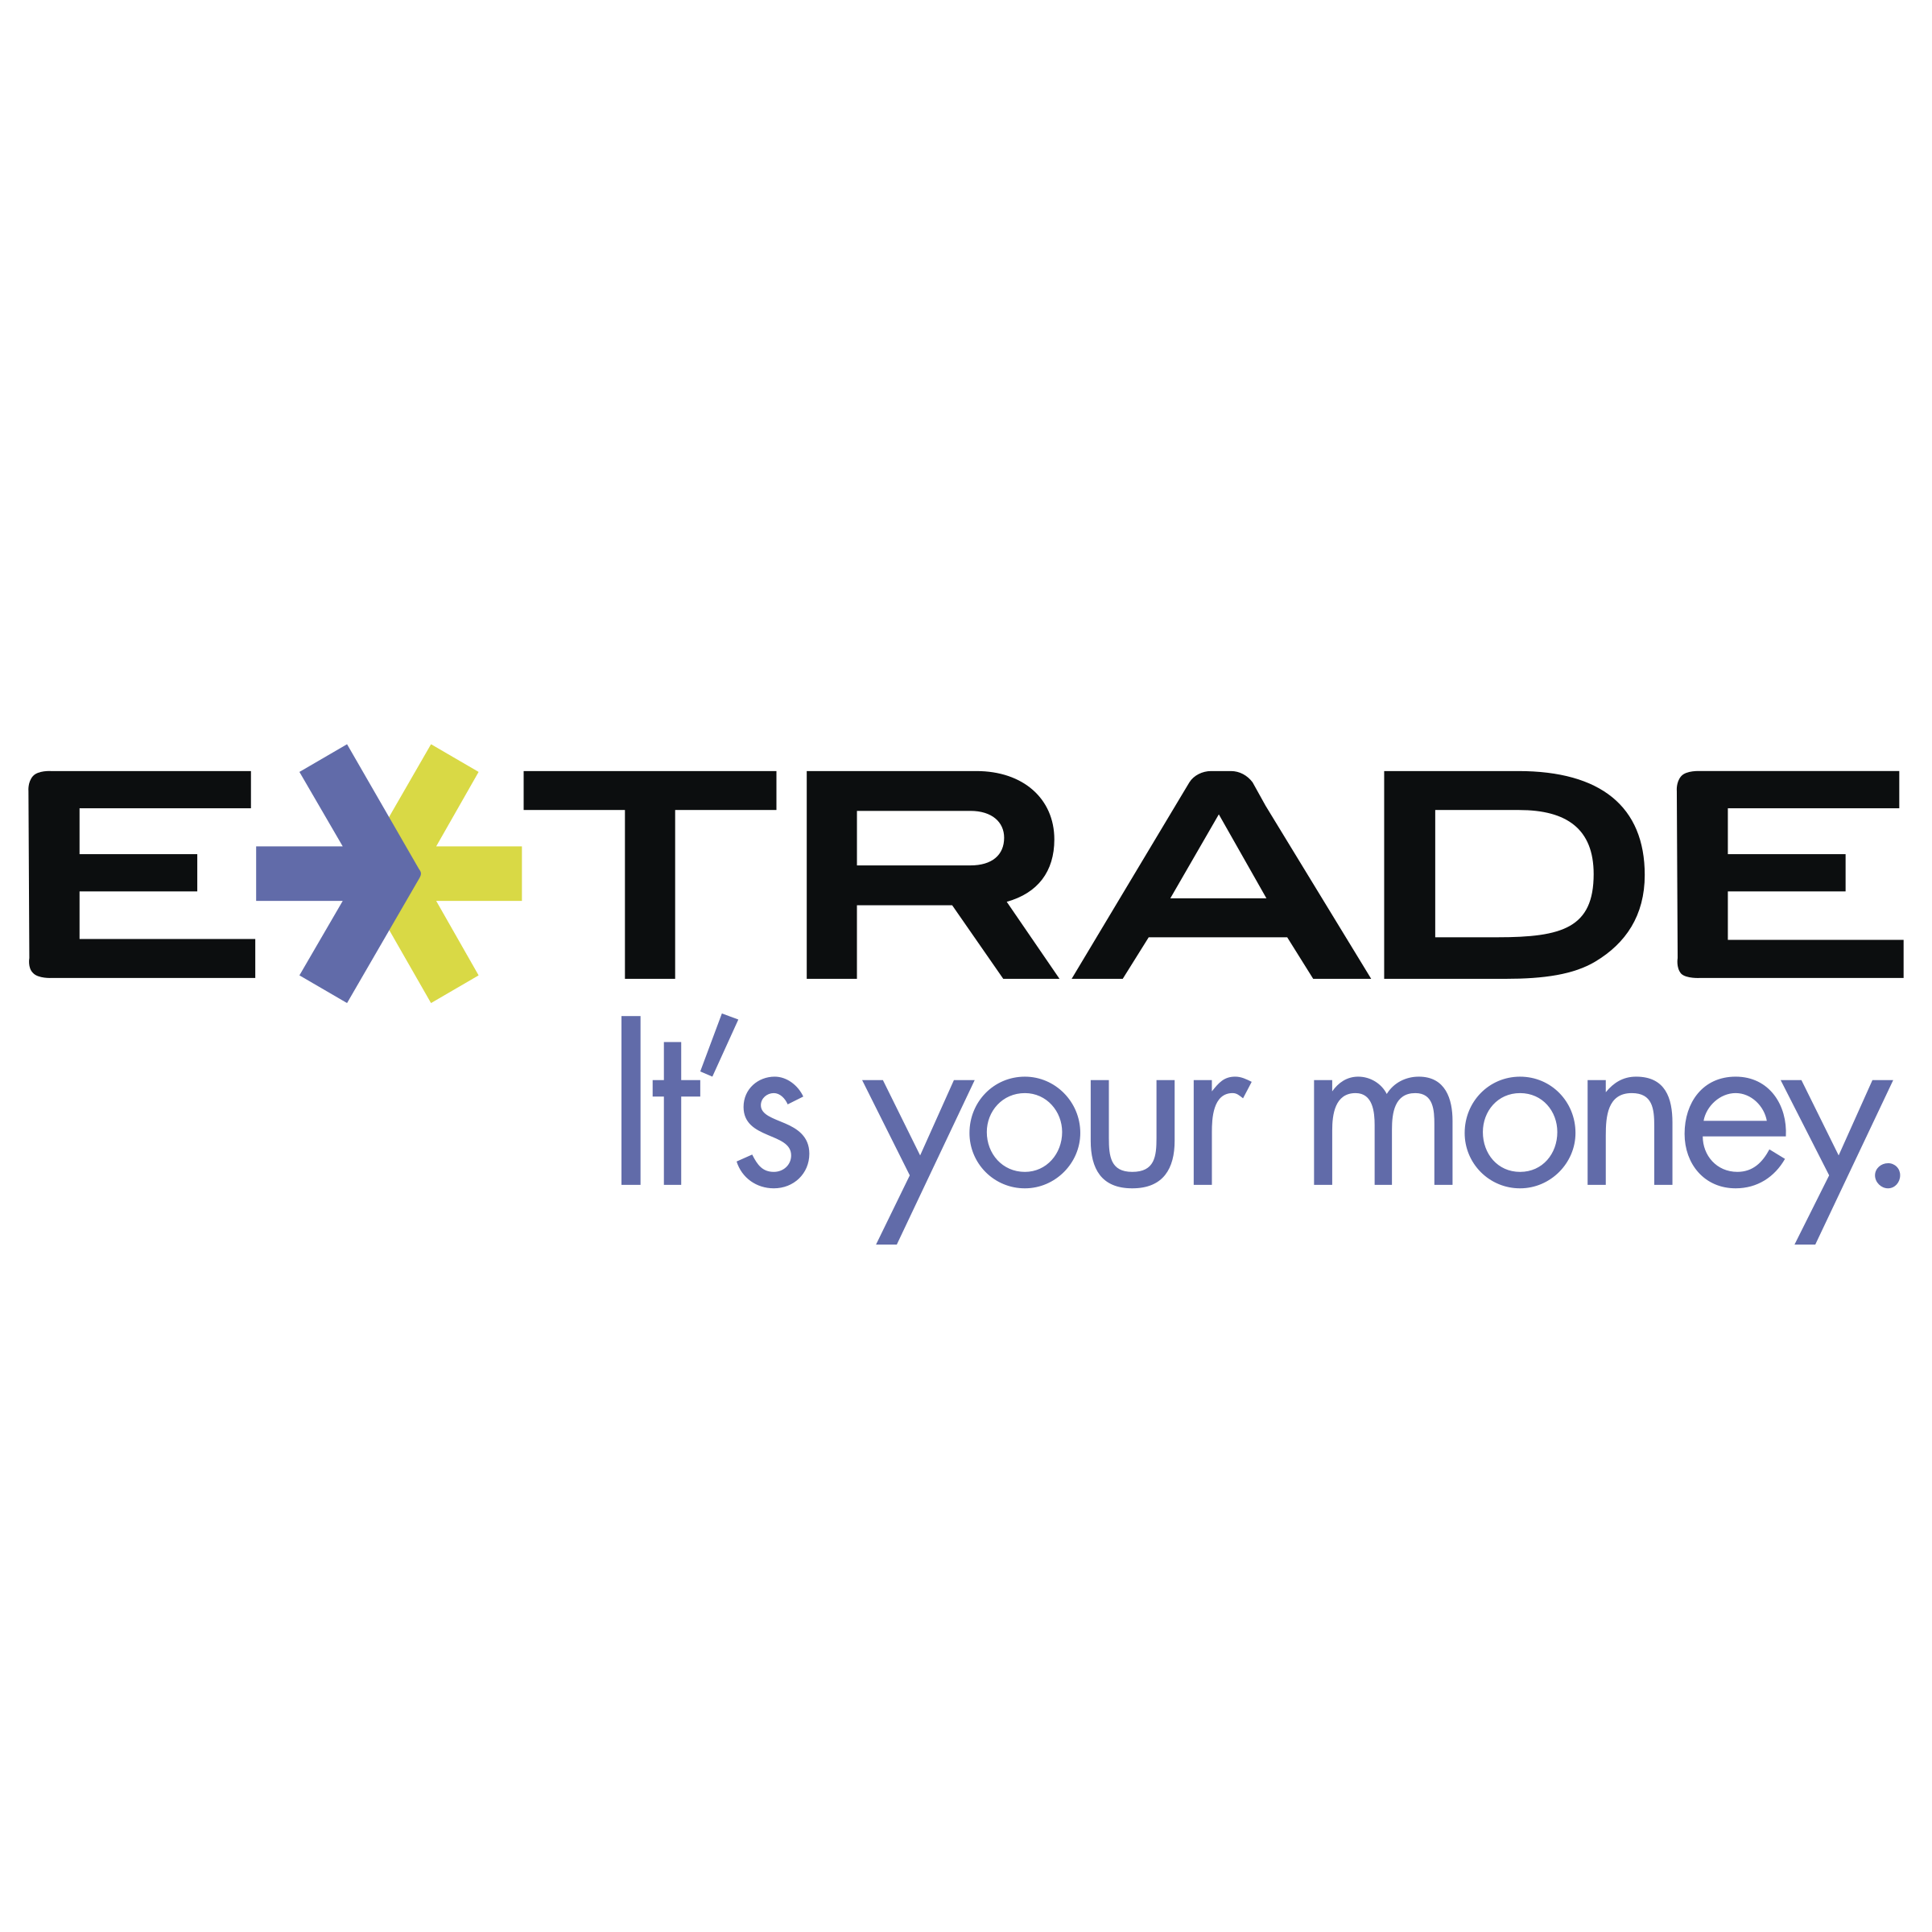 e-trade-securities-1-logo-png-transparent.png